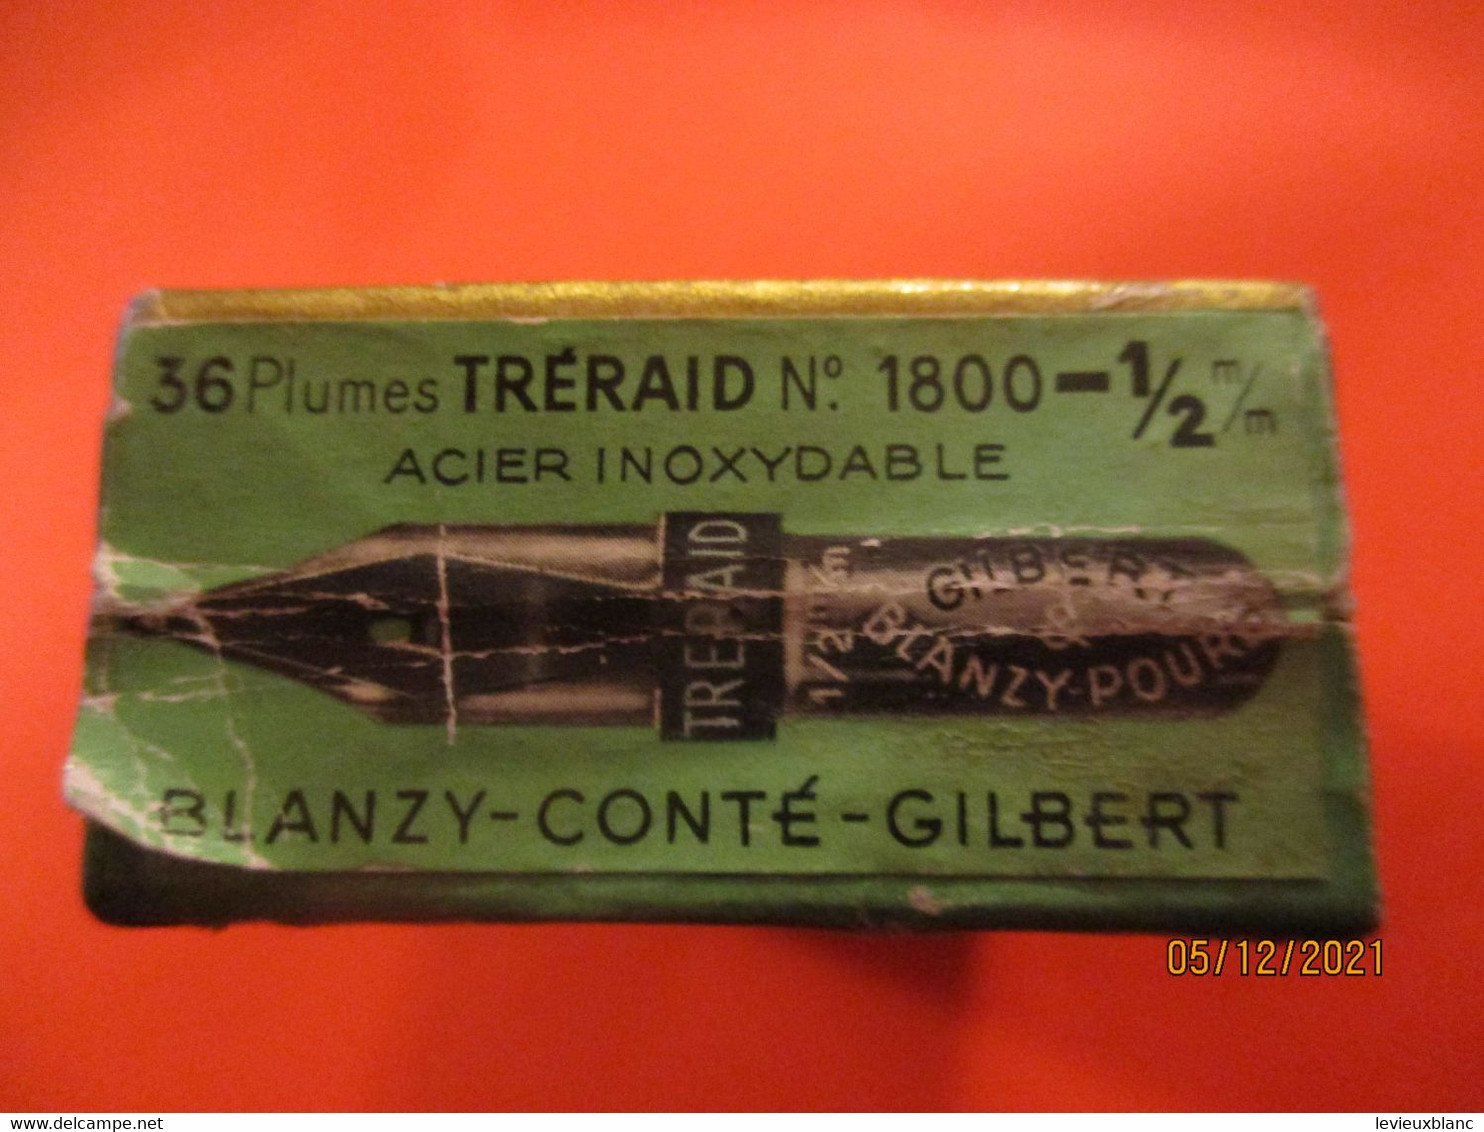 Boite De Plumes Métalliques "Tréraid"/ GILBERT & BLANZY-POURE/Tréraid-1-2 M-m/Vers 1930-50  CAH328 - Vulpen